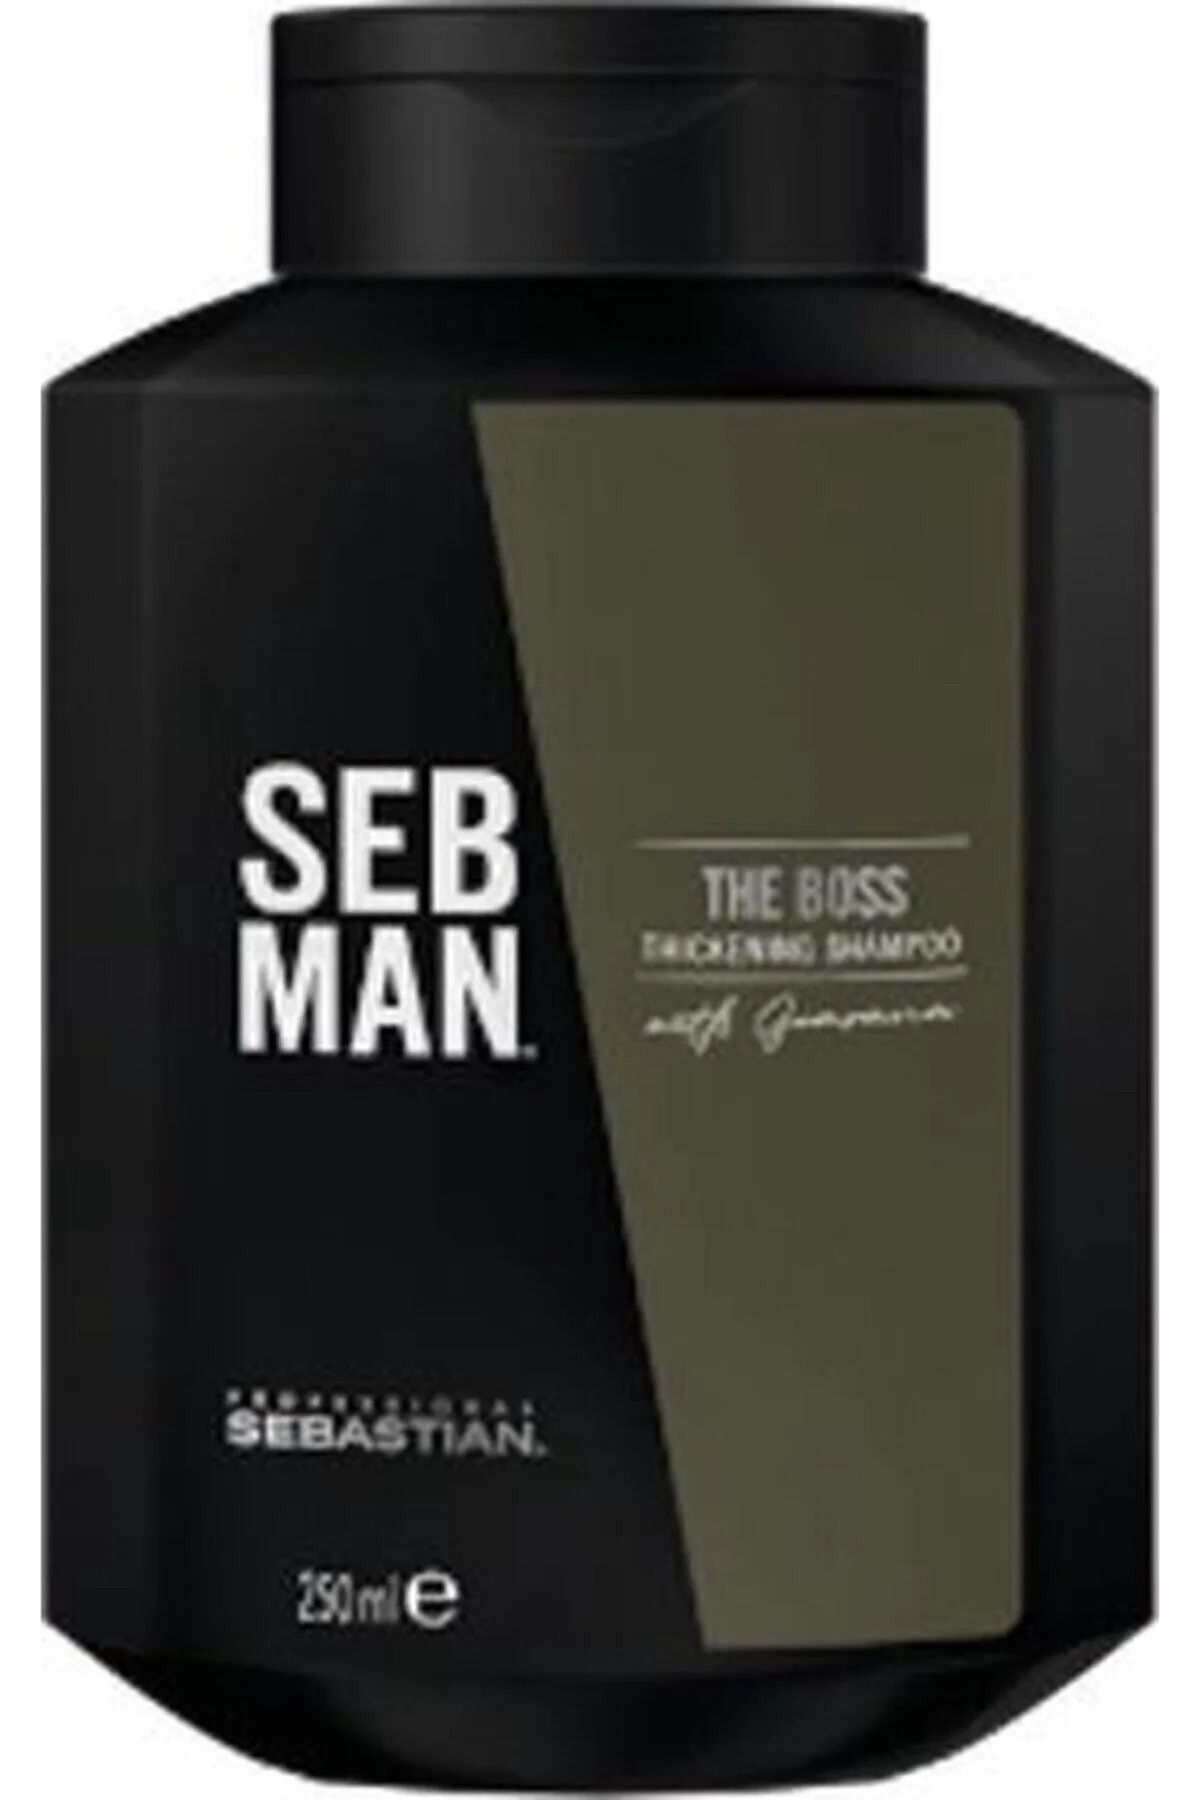 Sebastian Sebman The Boss Erkeklere Özel İnce Telli Saçlar İçin Kalınlaştıcı Hacim Şampuanı 250ml